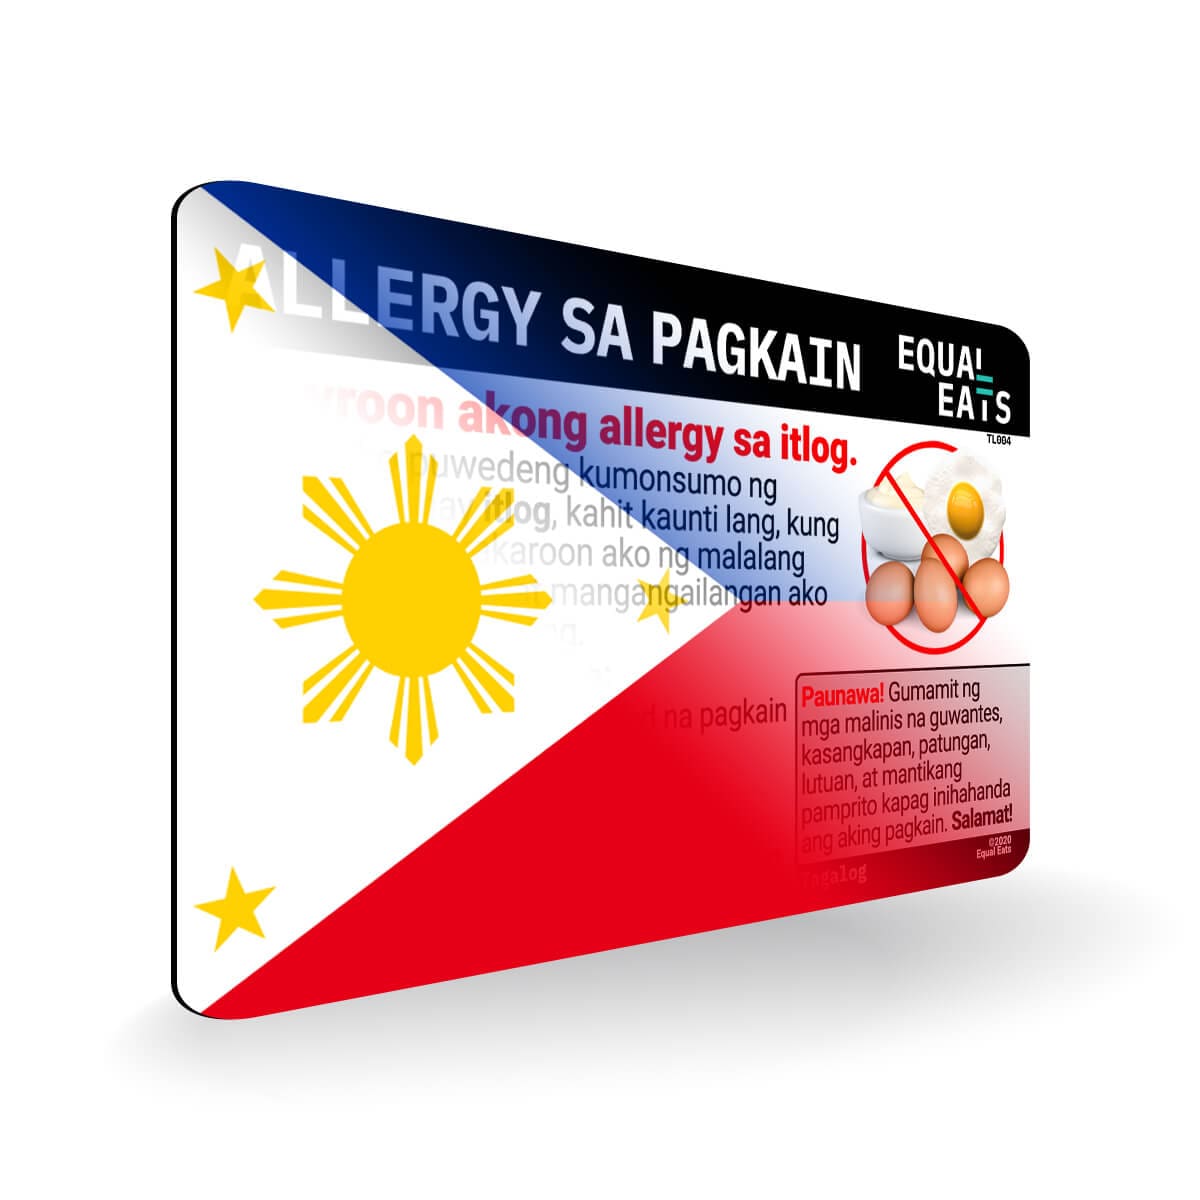 Egg Allergy in Tagalog. Egg Allergy Card for Philippines